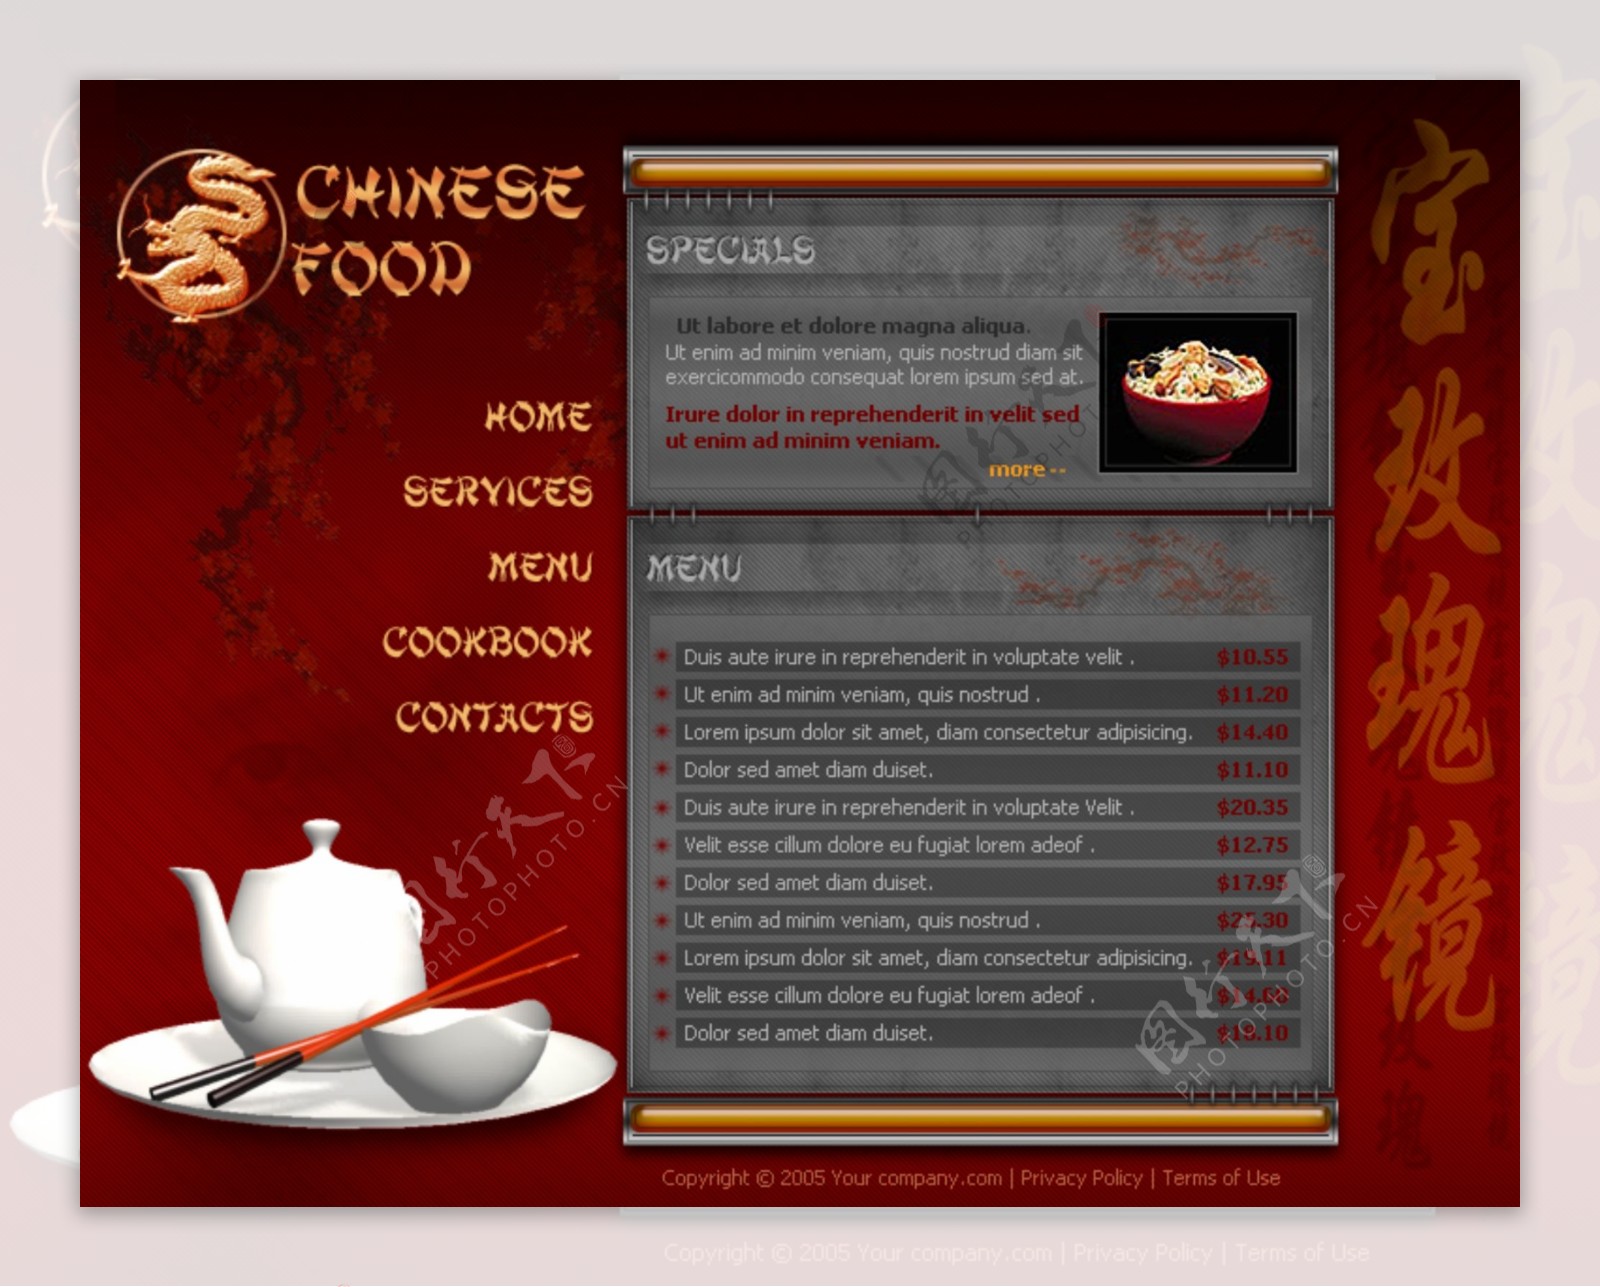 欧美中国餐饮店网页模板